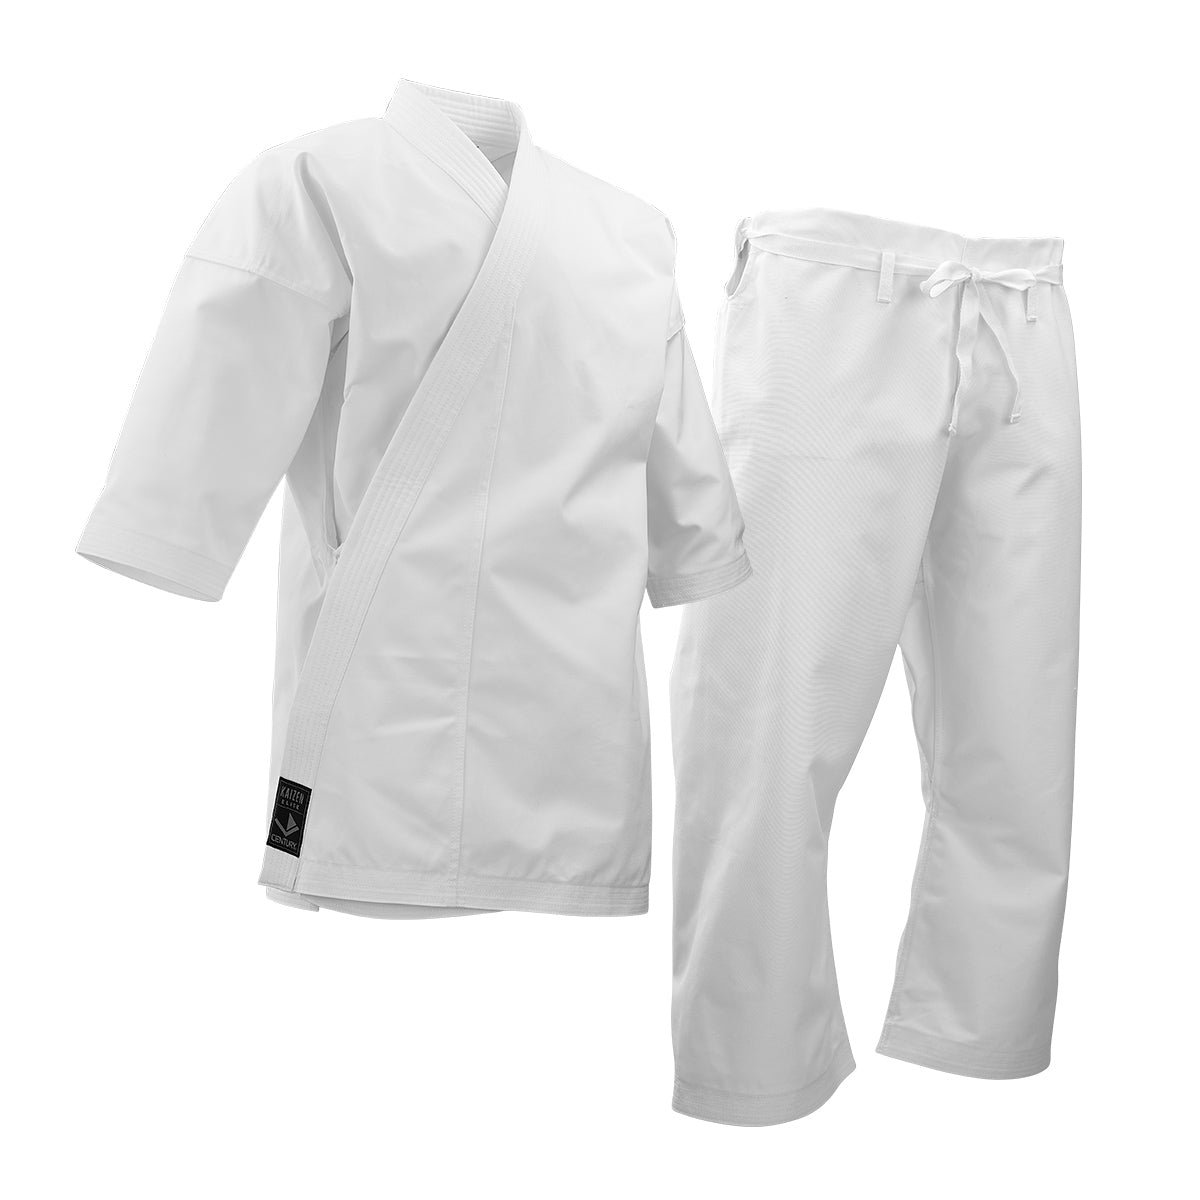 Kaizen Elite Uniform White